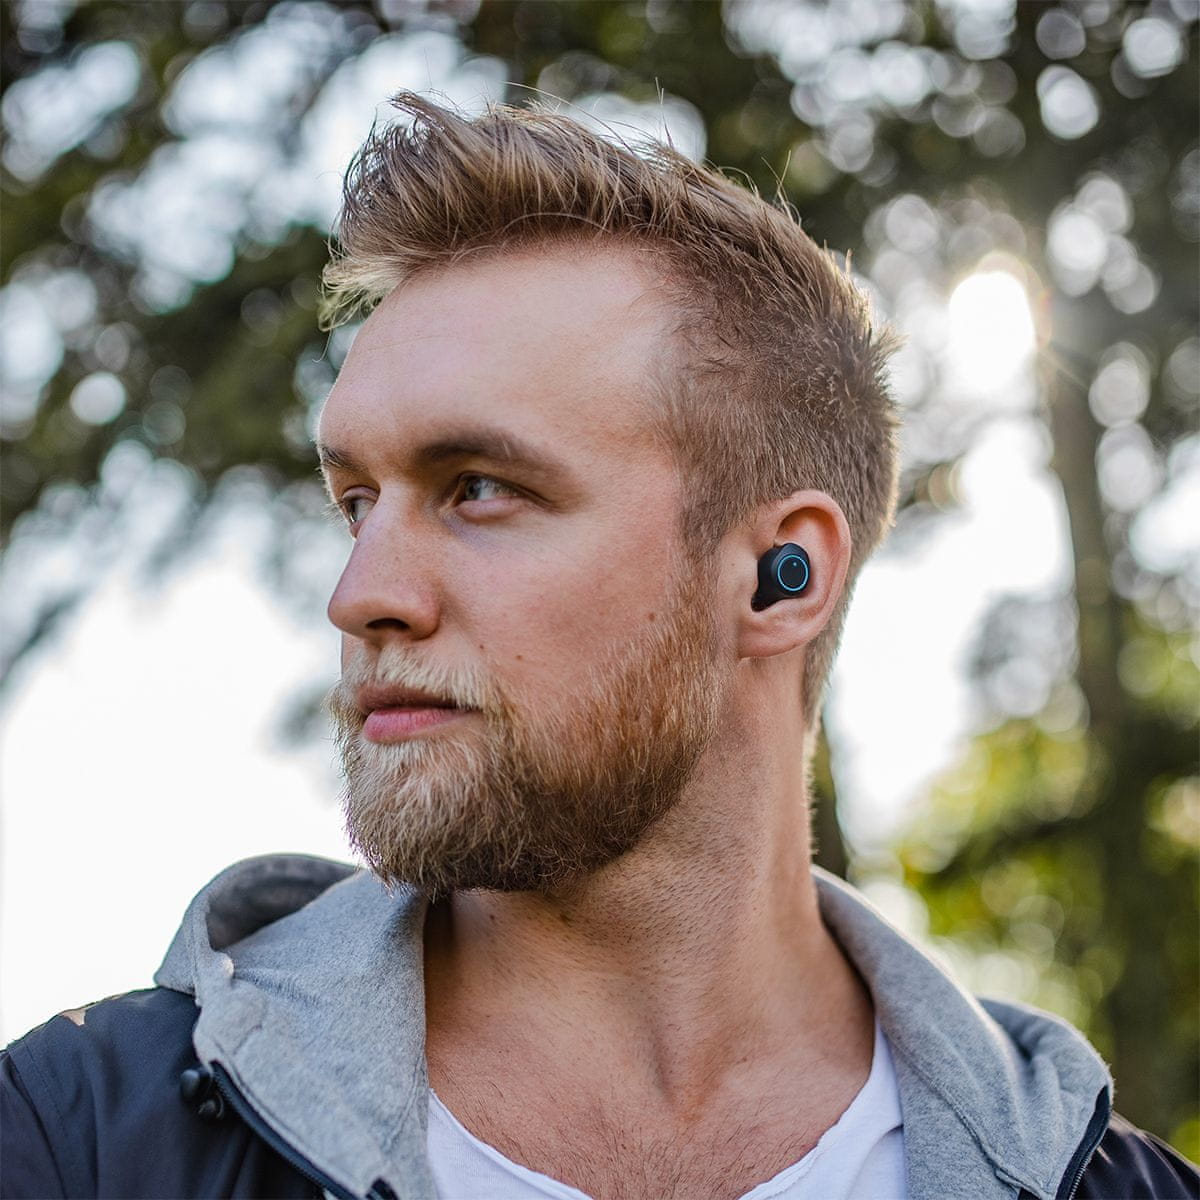 Bluetooth 5.0 niceboy hive drops sluchátka do uší špuntová true wireless skvělý zvuk maxxbass technologie usbc nabíjení dotykové ovládání handsfree telefonování smart buttons autopárování nabíjecí pouzdro ipx4 voděodolná 3 h výdrže moderní design